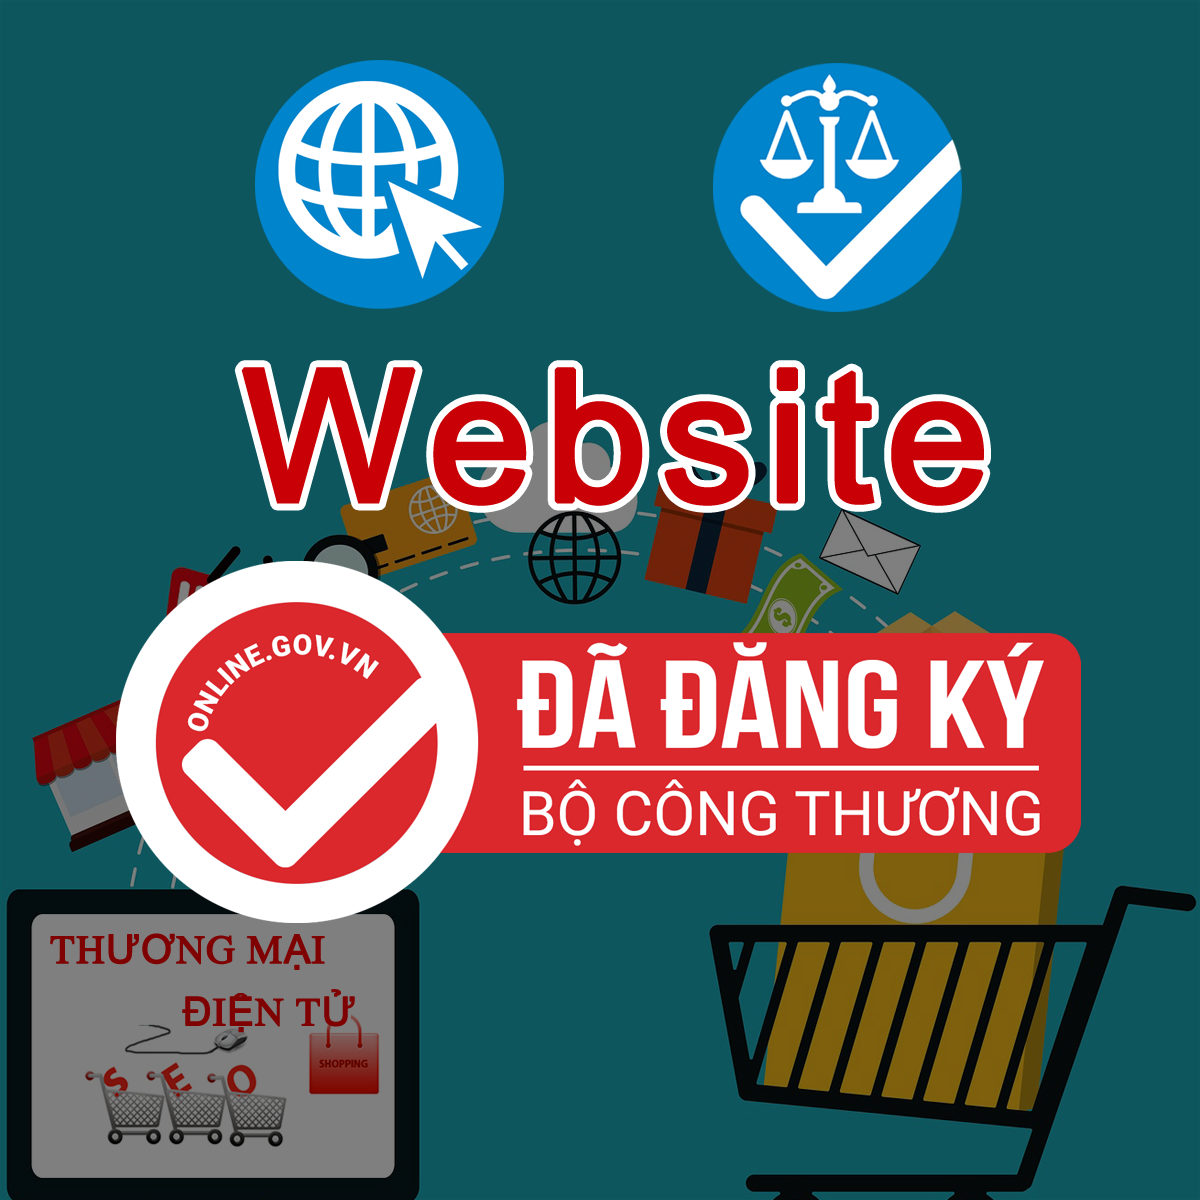 Dịch Vụ Đăng Ký Website Với Bộ Công Thuong